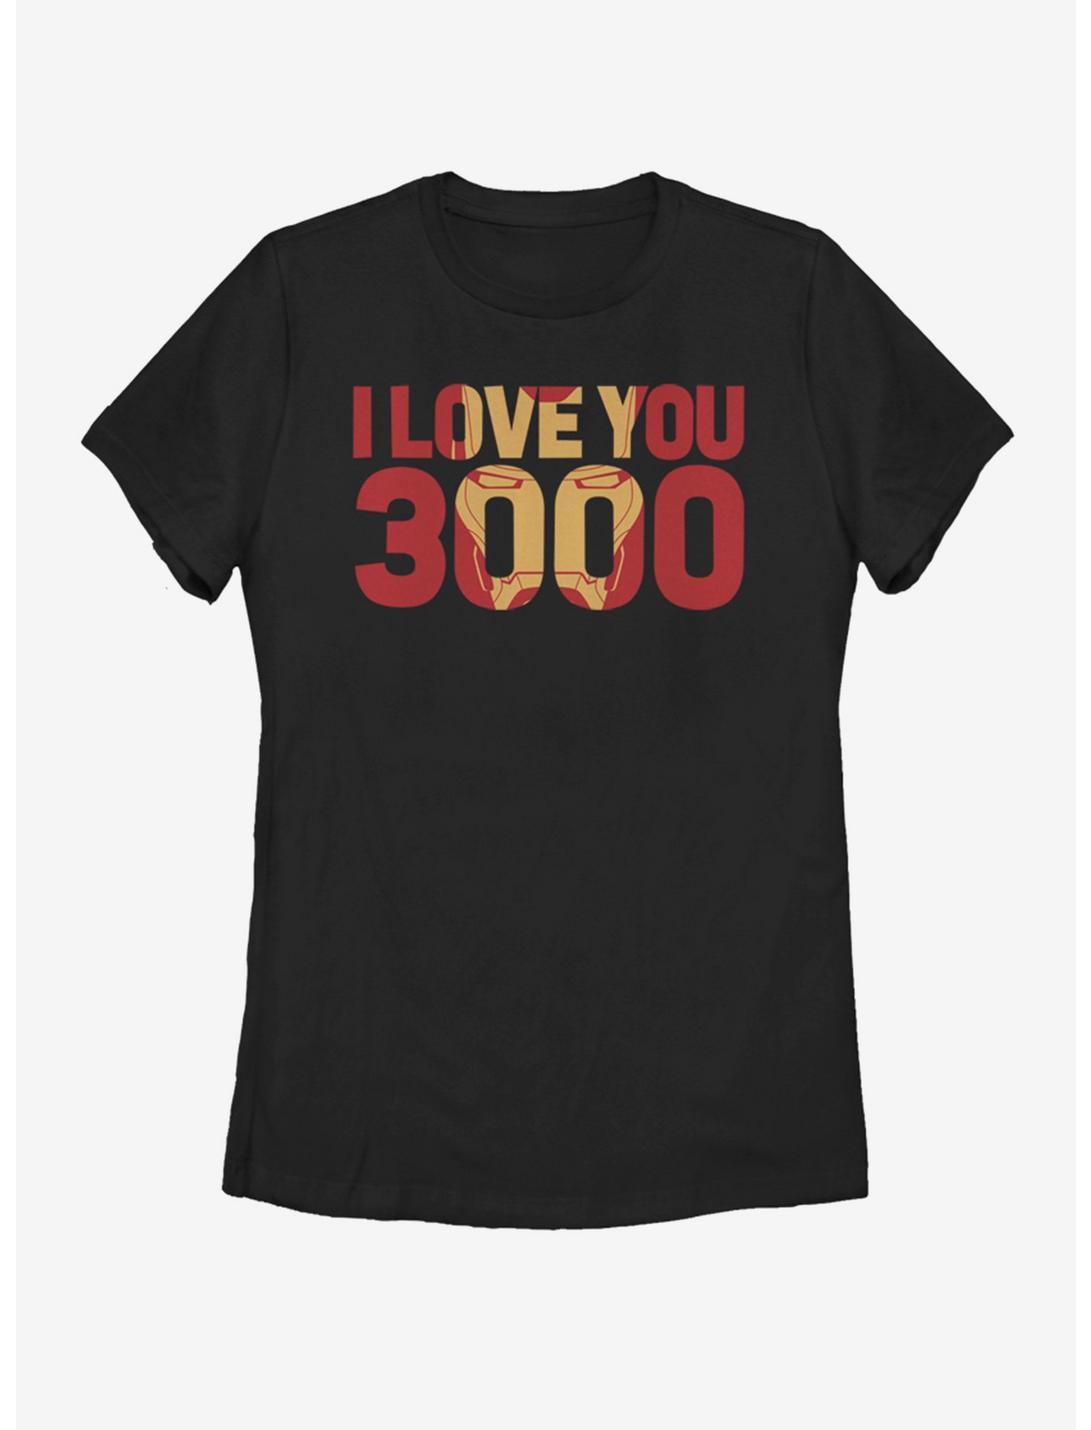 Marvel Avengers: Endgame Love You 3000 Womens T-Shirt, BLACK, hi-res